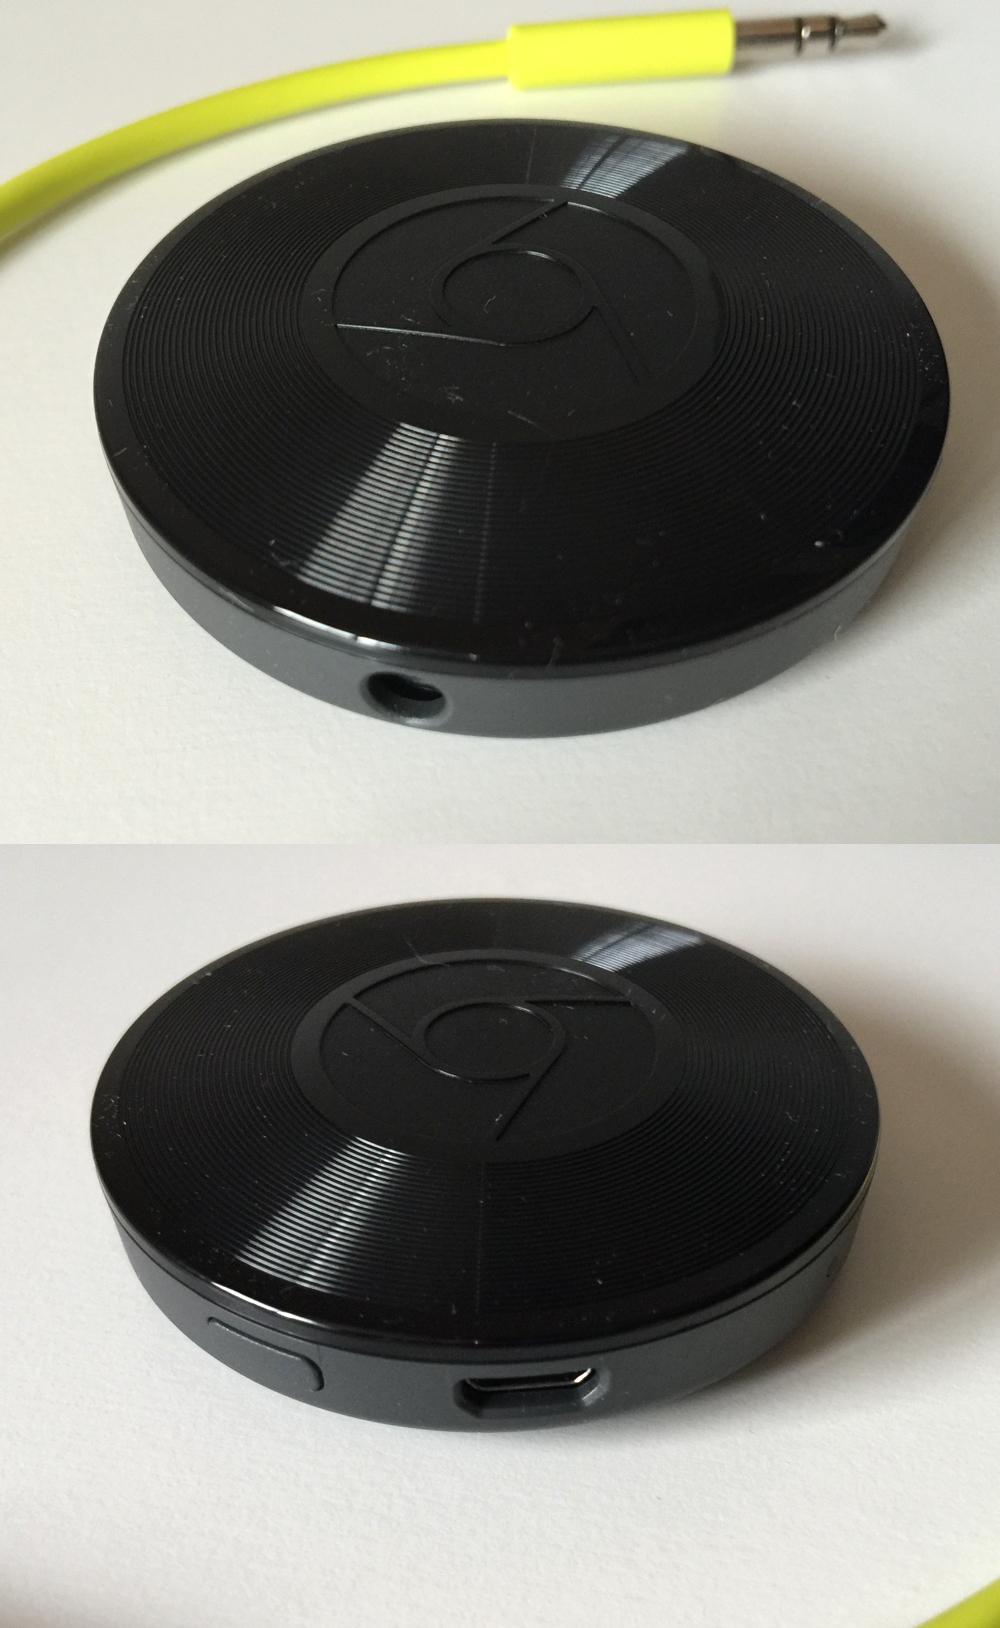 Google Chromecast Audio Review: A Better Mousetrap Checkout by Ben's Bargains